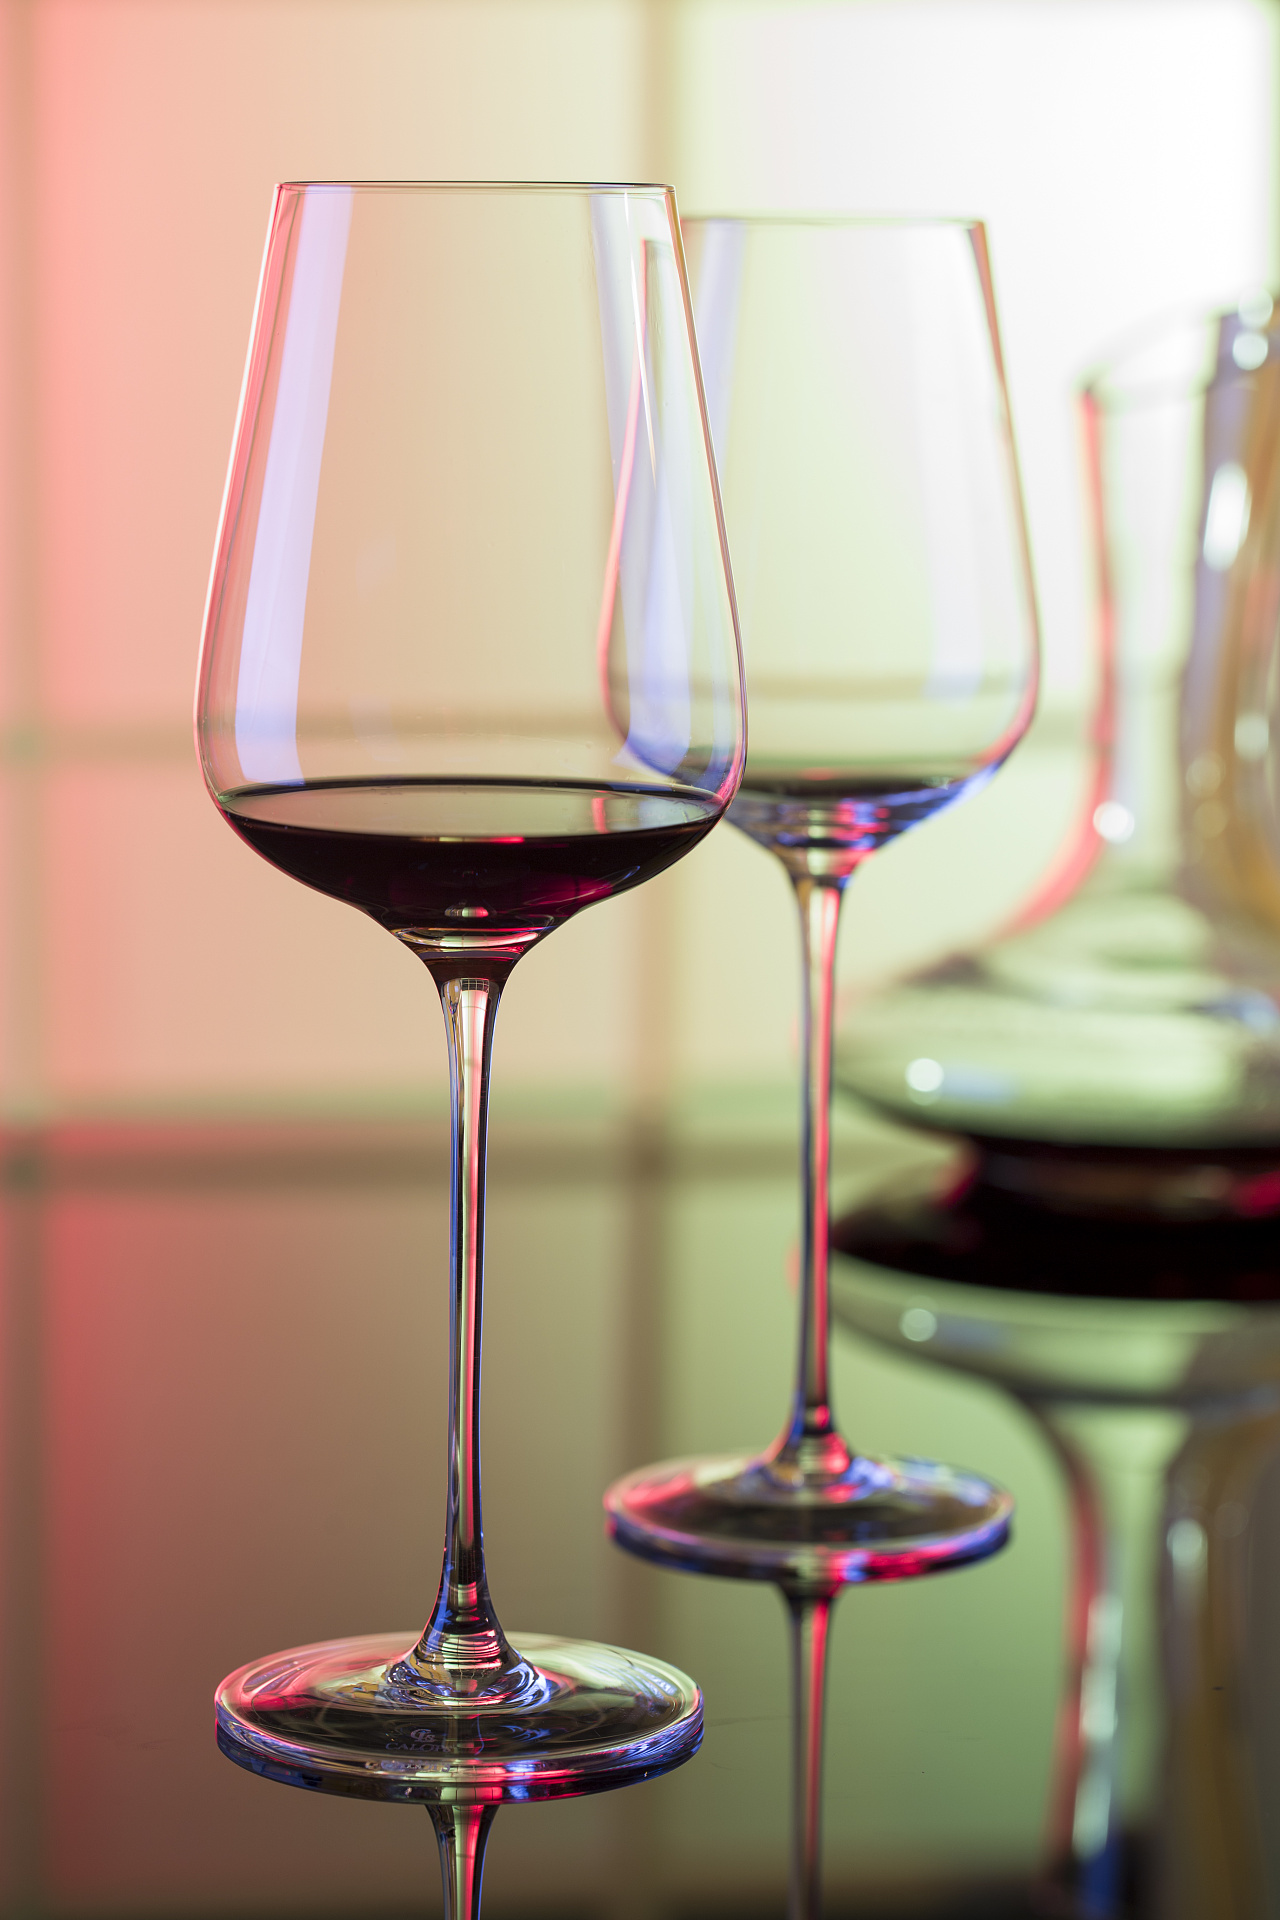 Идеальное сочетание: фотография двух бокалов вина - прекрасная иллюстрация романтического вечера ...